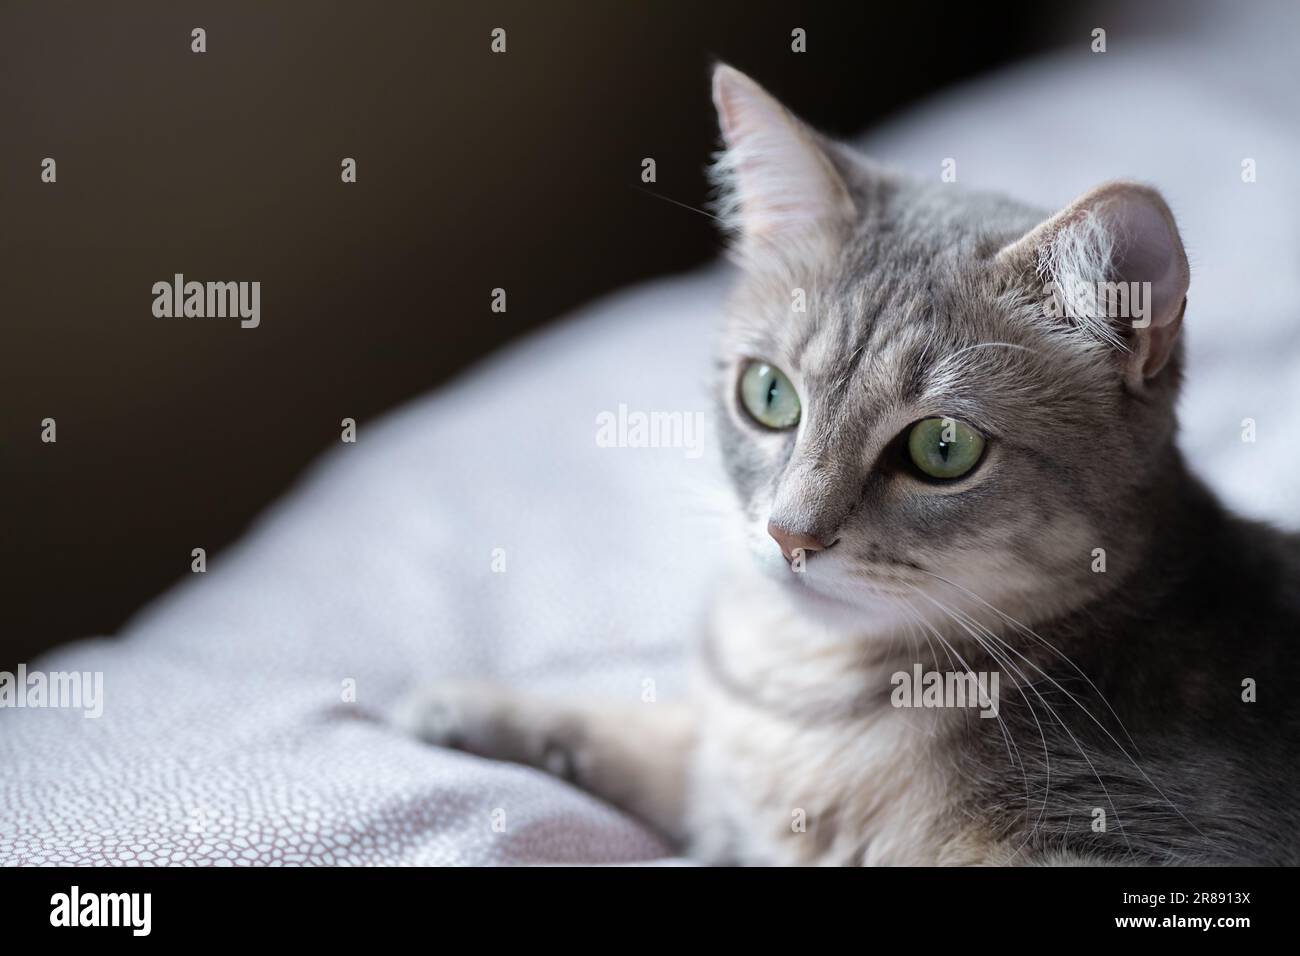 gatto tabby a righe grigie sdraiato sul letto in interni domestici Foto Stock